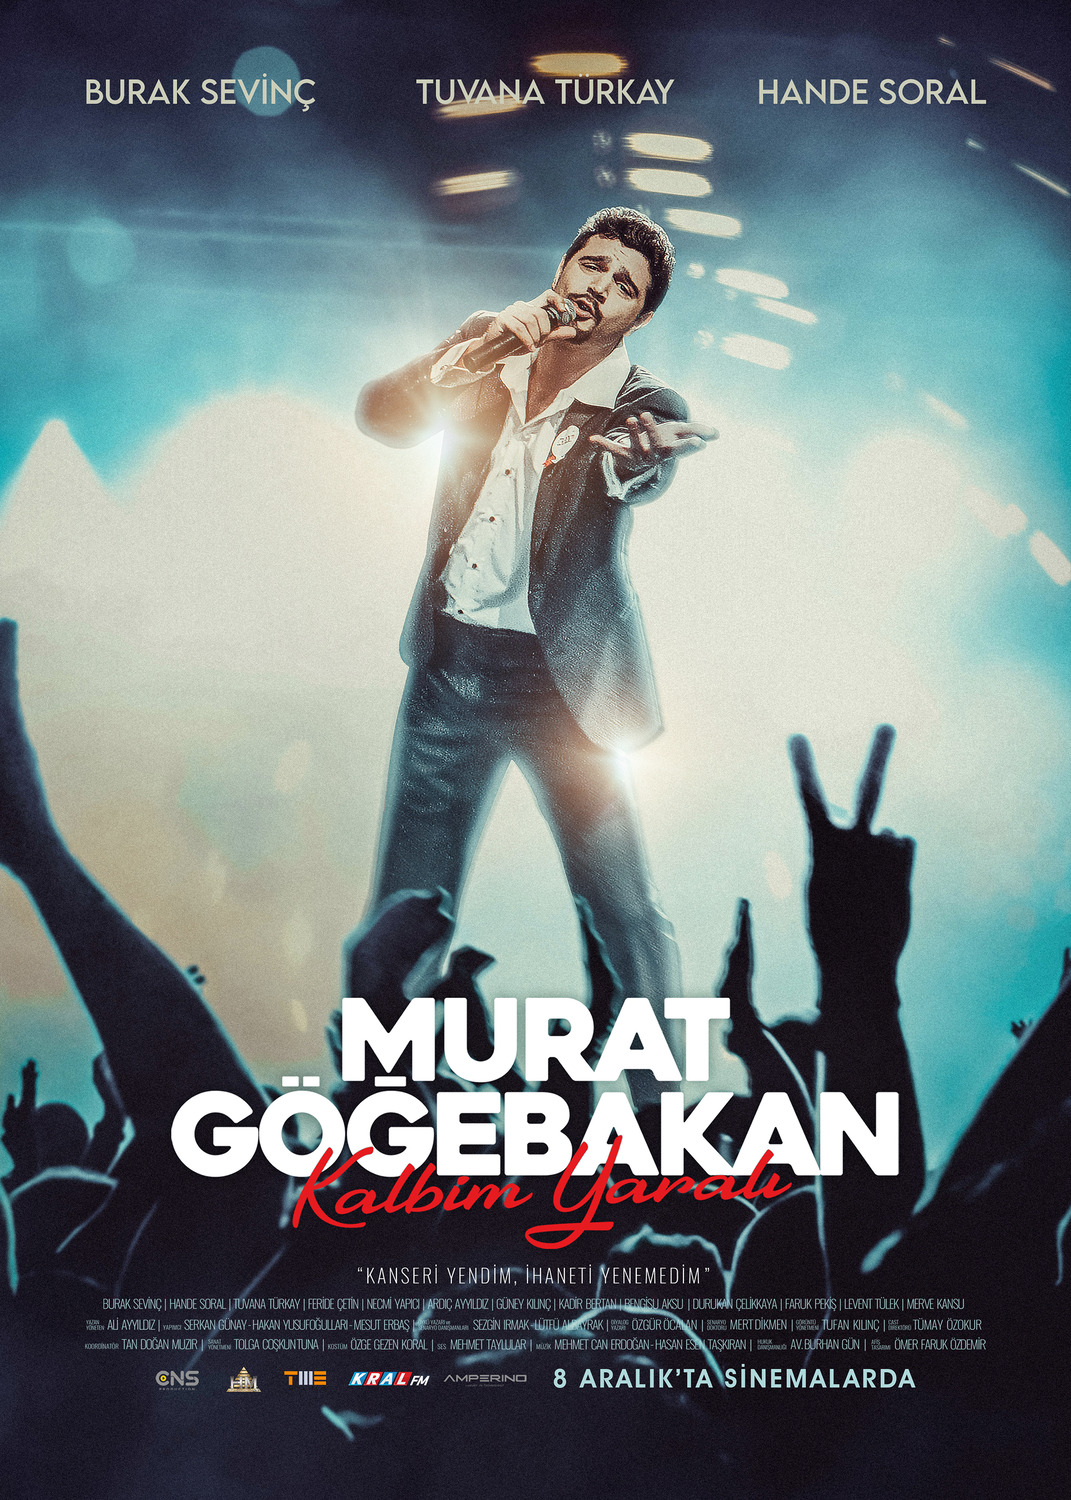 Extra Large Movie Poster Image for Murat Gögebakan: Kalbim Yarali (#7 of 14)